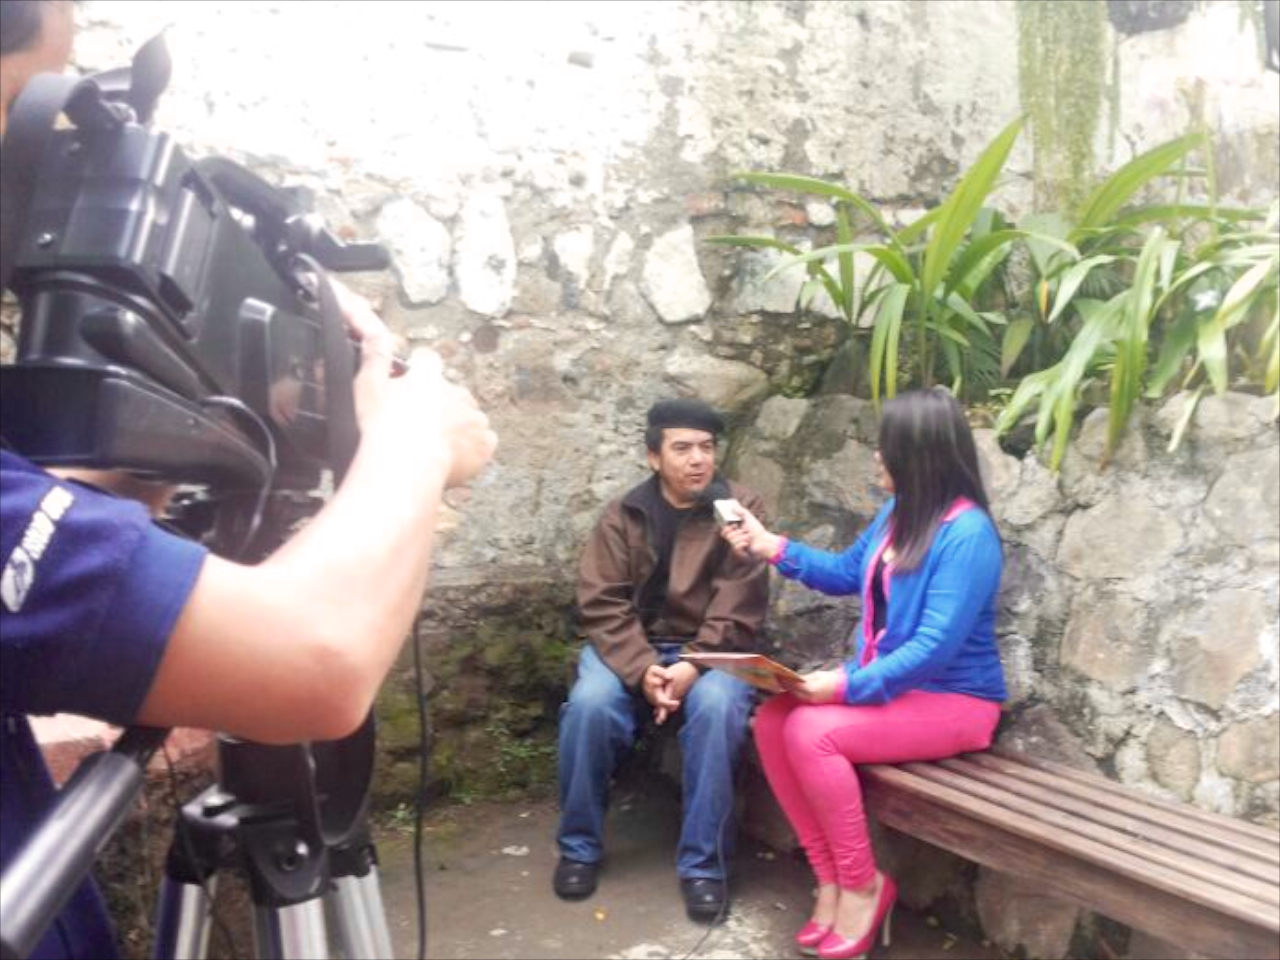 El canal antigüeño TeleVos transmite hoy la entrevista sobre AntiguaDailyPhoto y Caminatas Fotográficas en Antigua Guatemala